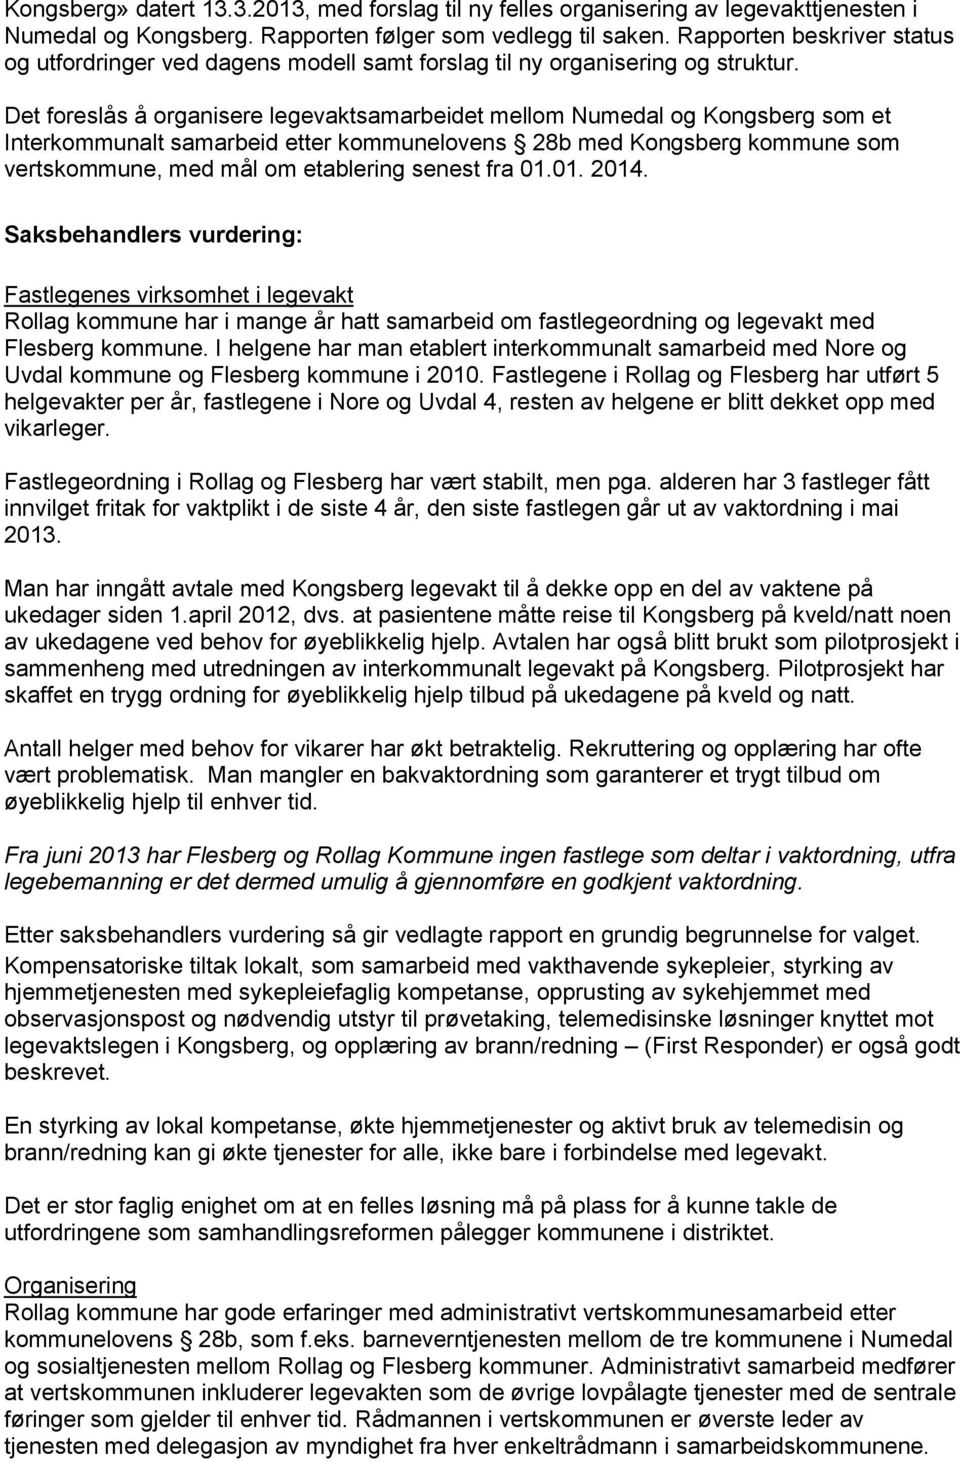 Det foreslås å organisere legevaktsamarbeidet mellom Numedal og Kongsberg som et Interkommunalt samarbeid etter kommunelovens 28b med Kongsberg kommune som vertskommune, med mål om etablering senest